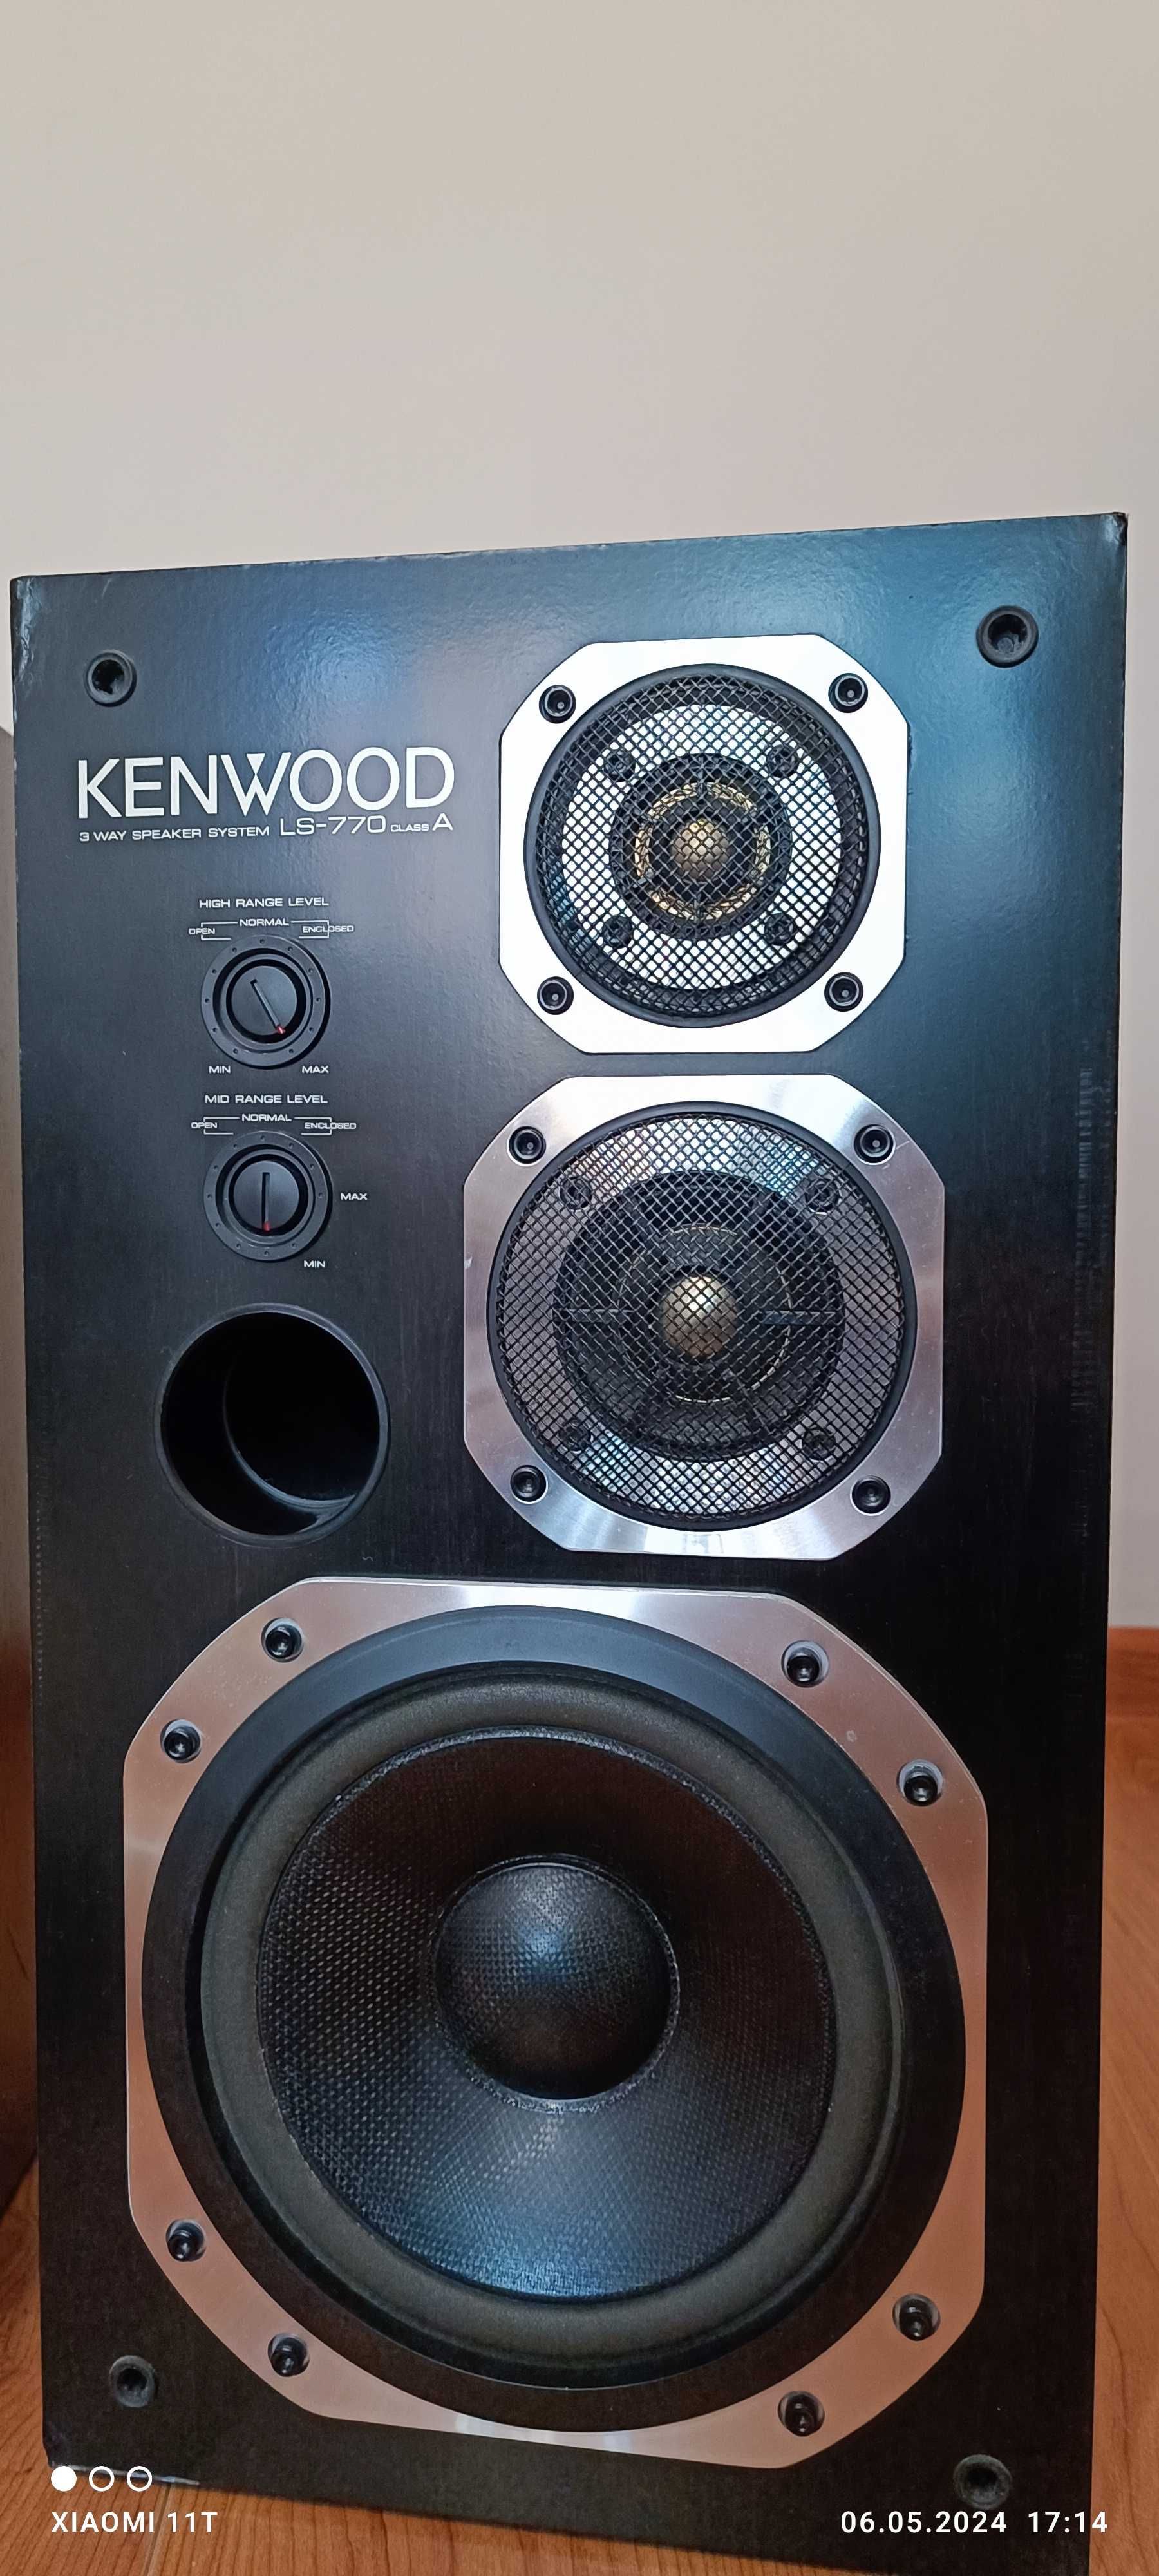 Kenwood LS-770 A